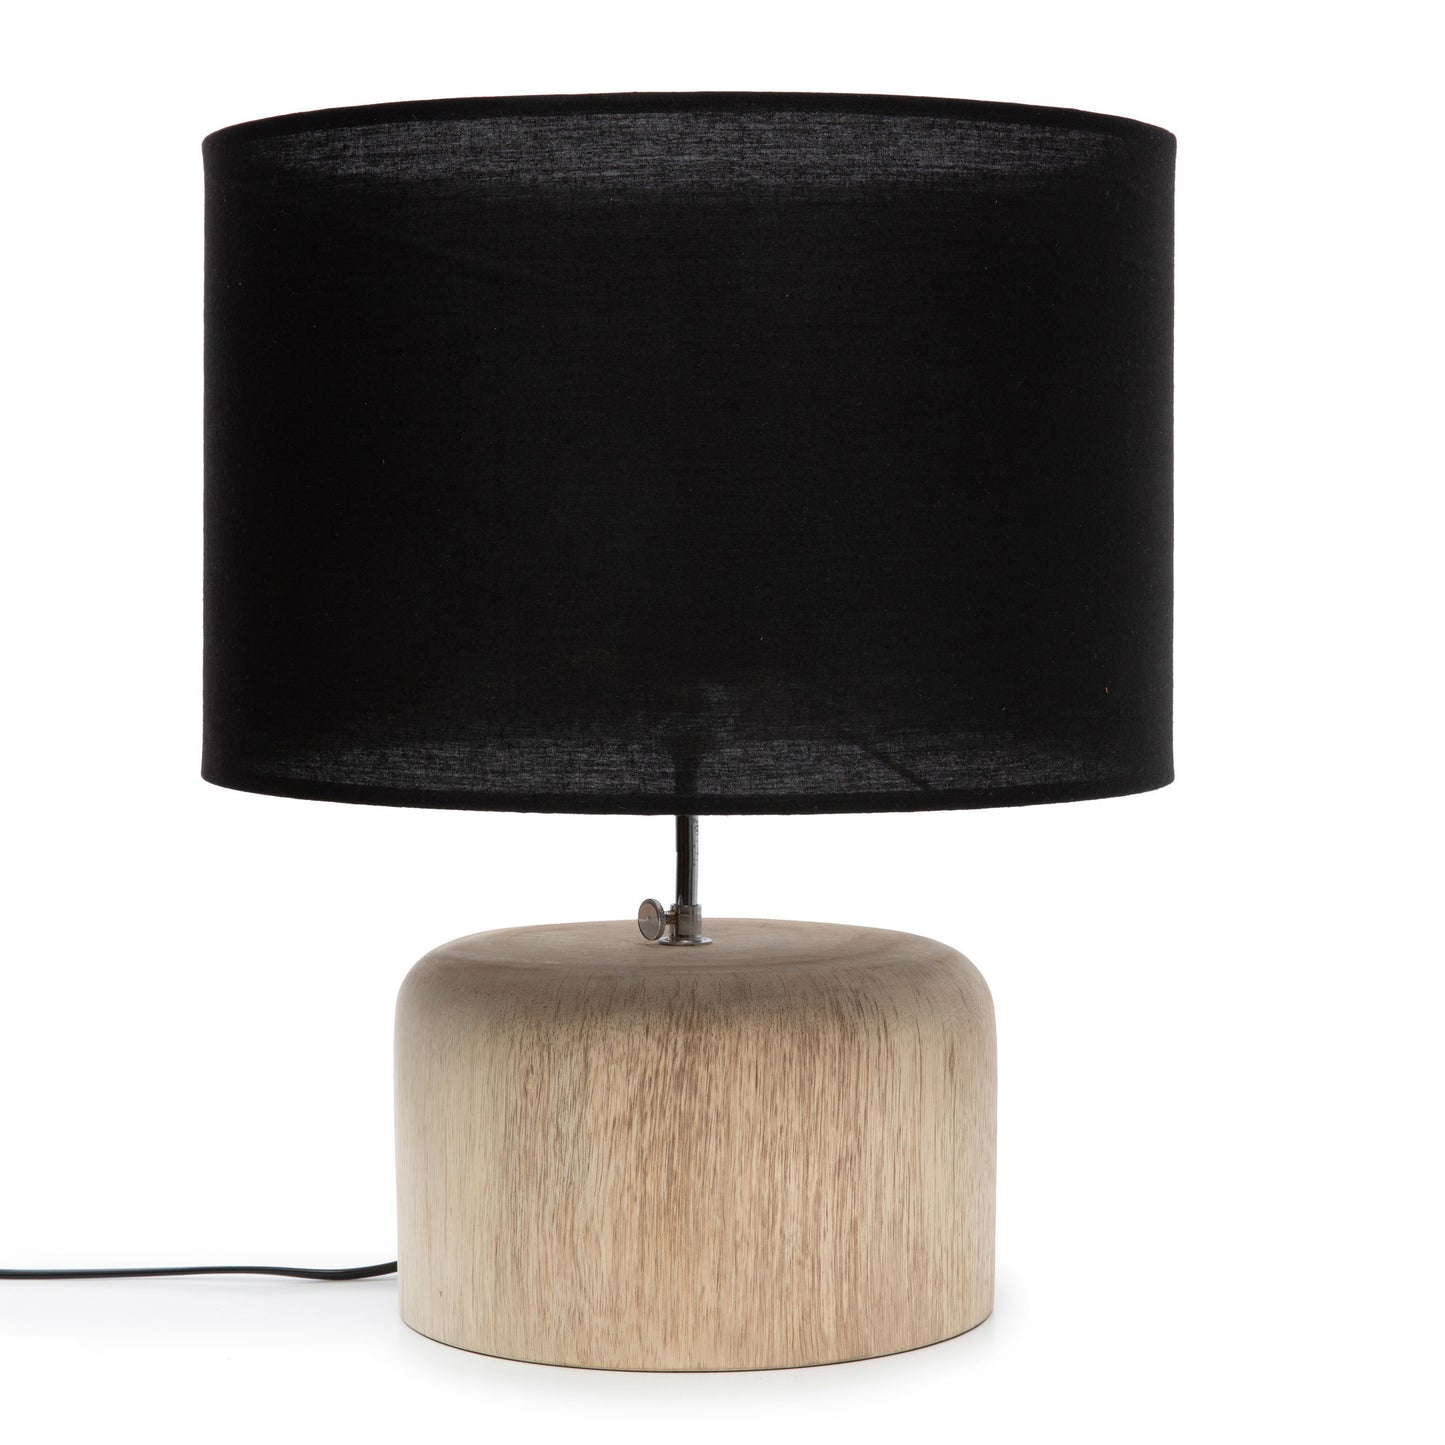 De Teak Wood Tafellamp - Naturel Zwart-Lamp-Bazar Bizar-Default-de-teak-wood-tafellamp-naturel-zwart-1-vloerlamp-Laat u inspireren door onze prachtige teakhouten tafellamp met zwarte stoffen kap die 100% sfeer creëert met zijn mooie kustlook. Het geeft een gezellig licht aan uw woonkamer, loungeruimte of slaapkamer.Elektrische kabel inbegrepen. Kleur Naturel Zwart Hoogte (cm) 46 Breedte (cm) 41 Lengte (cm) 41 Materialen Teakhout - Katoen Inclusief bekabeling? Ja-7438246174187-JABR064NB-Cerasus H